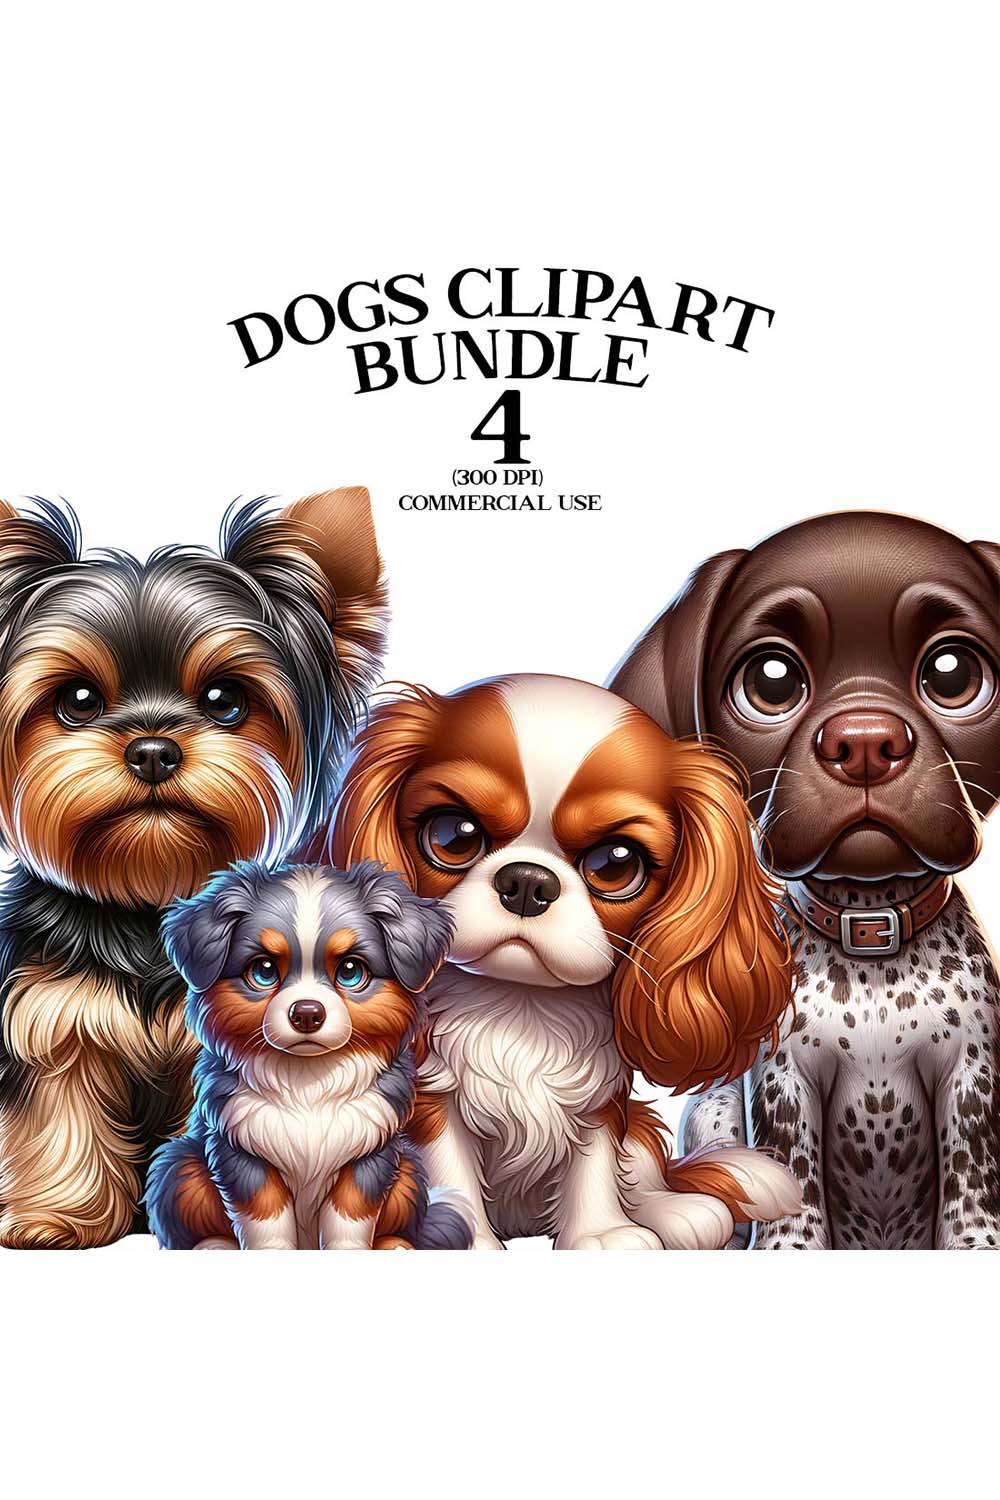 Dogs Clipart Bundle | Animals Clipart Bundle | Clipart pinterest preview image.